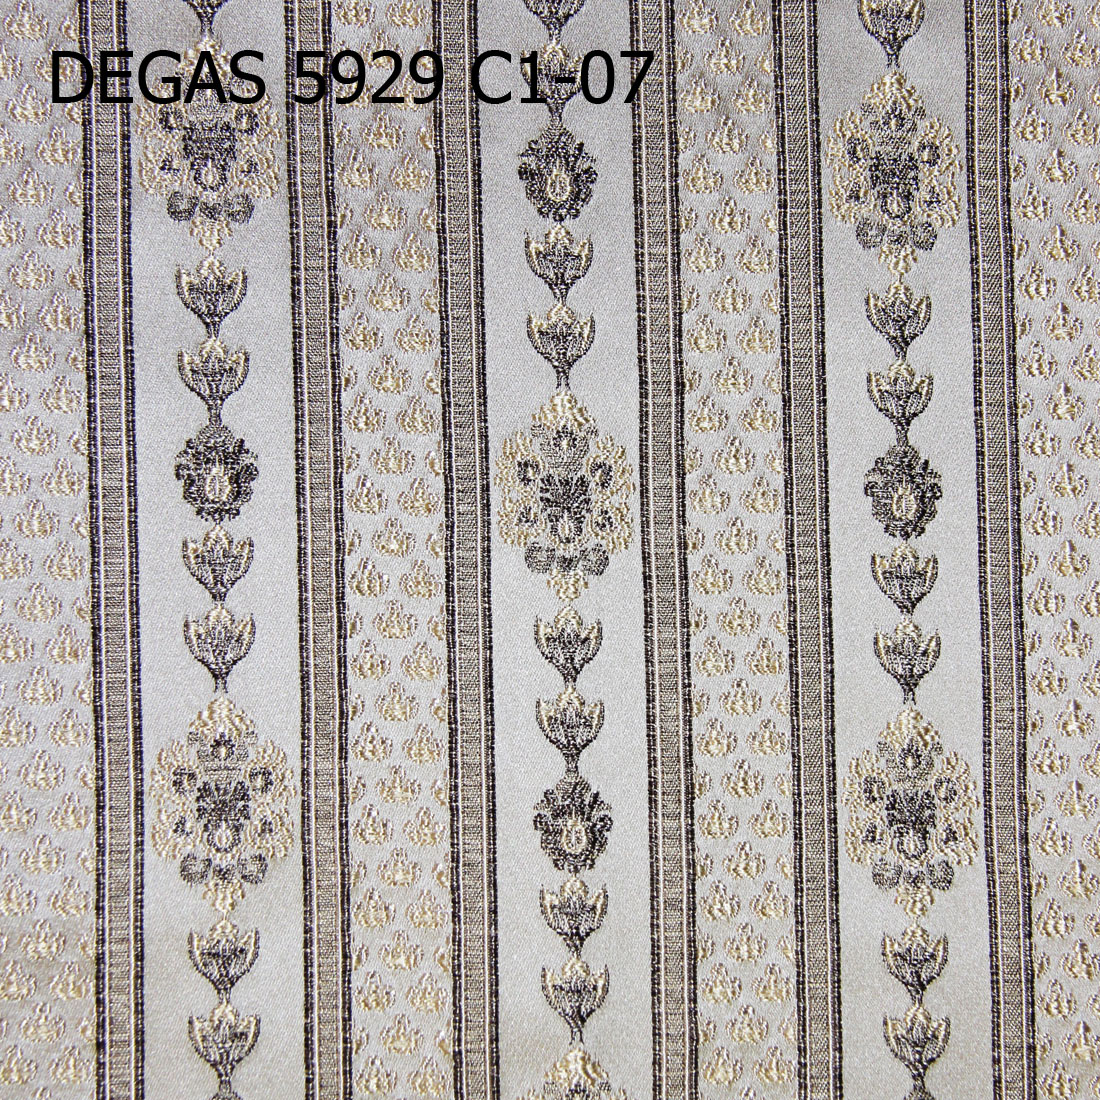 COM DEGAS 5929 C1-07